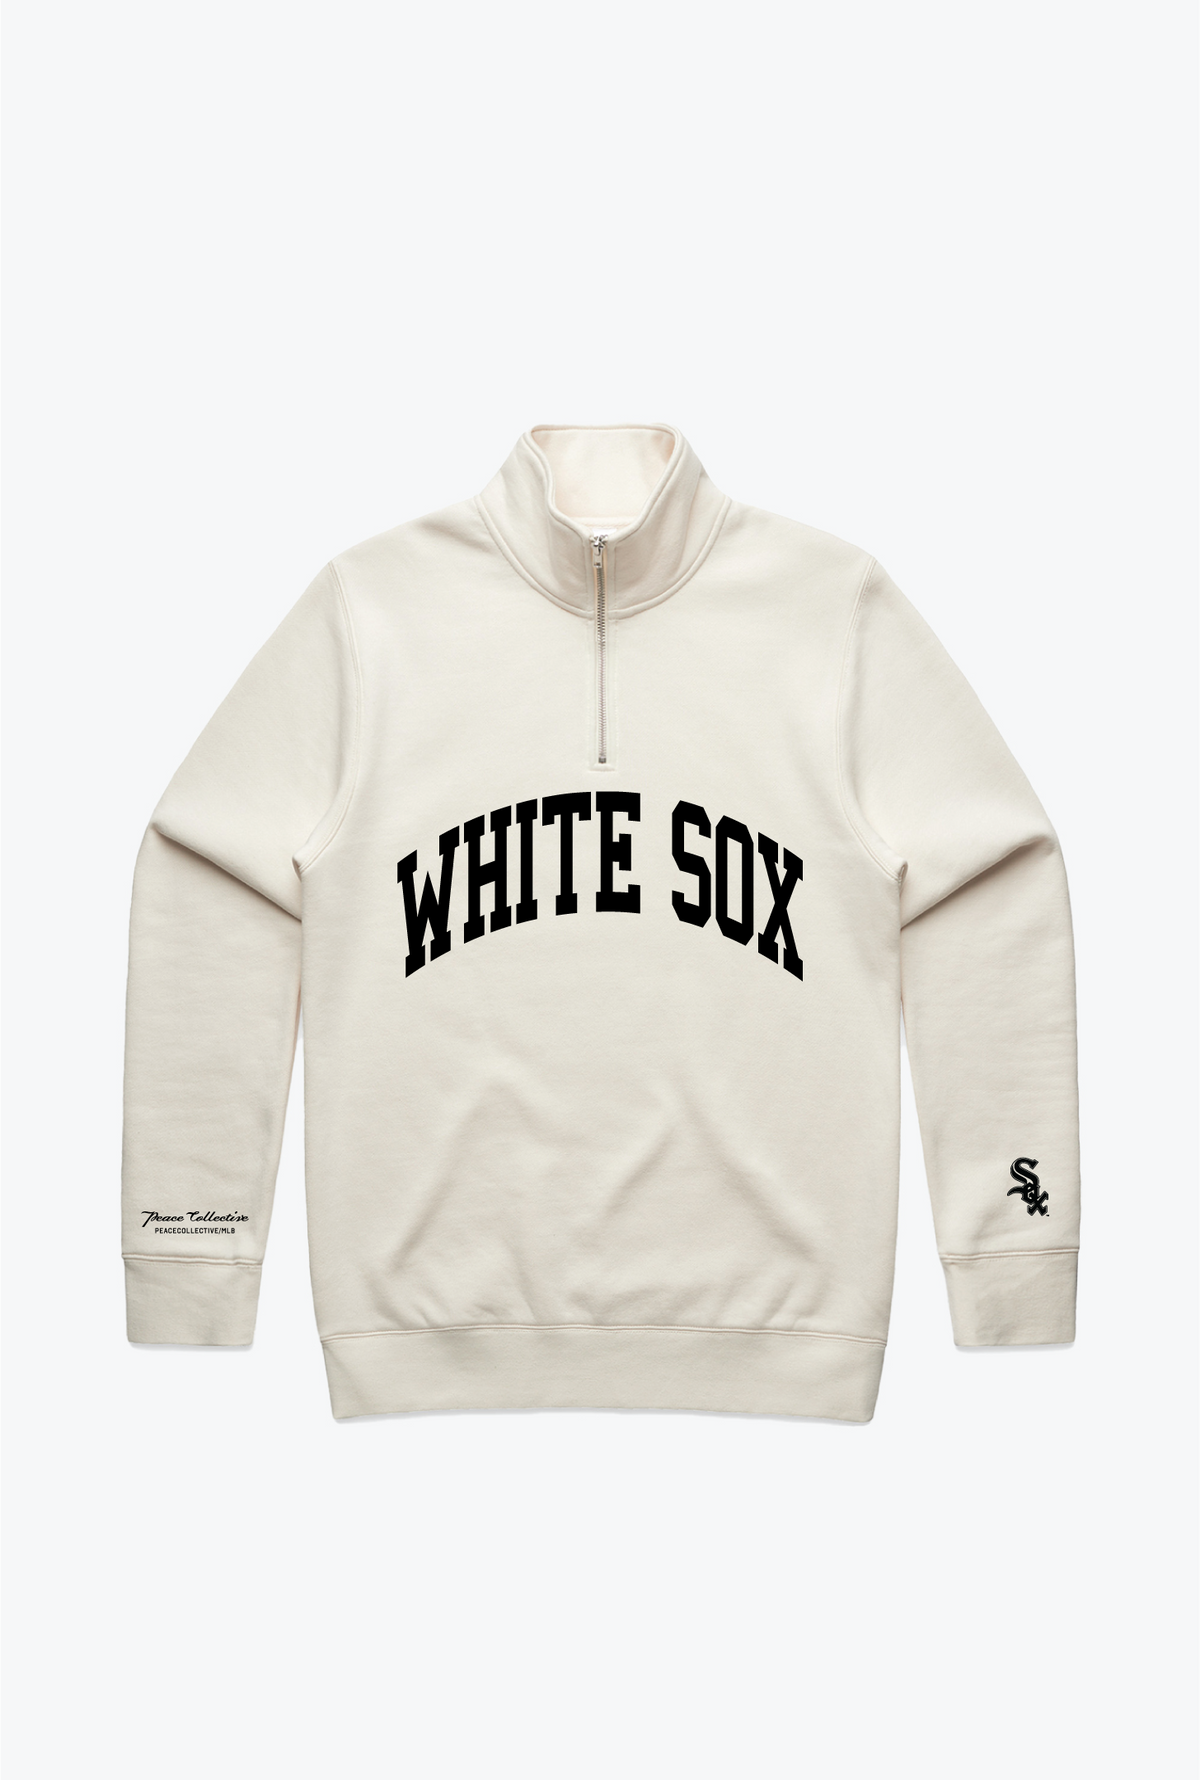 Chicago White Sox Collegiate Quarter Zip - Ivory